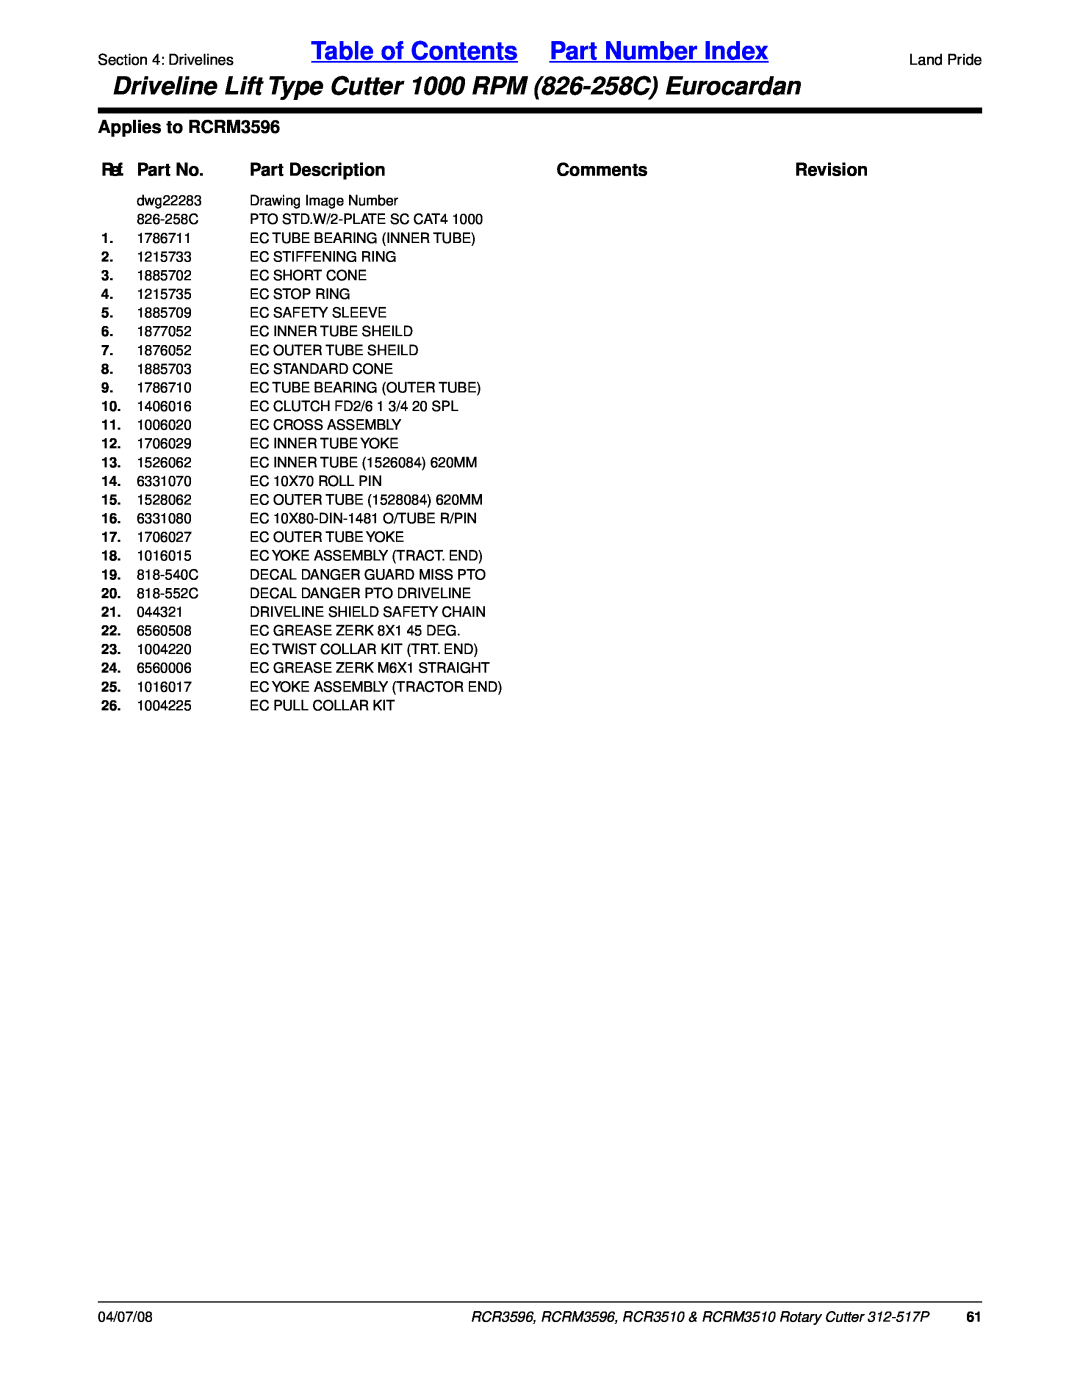 Land Pride RCRM3510 Table of Contents Part Number Index, Applies to RCRM3596, Ref. Part No, Part Description, Comments 